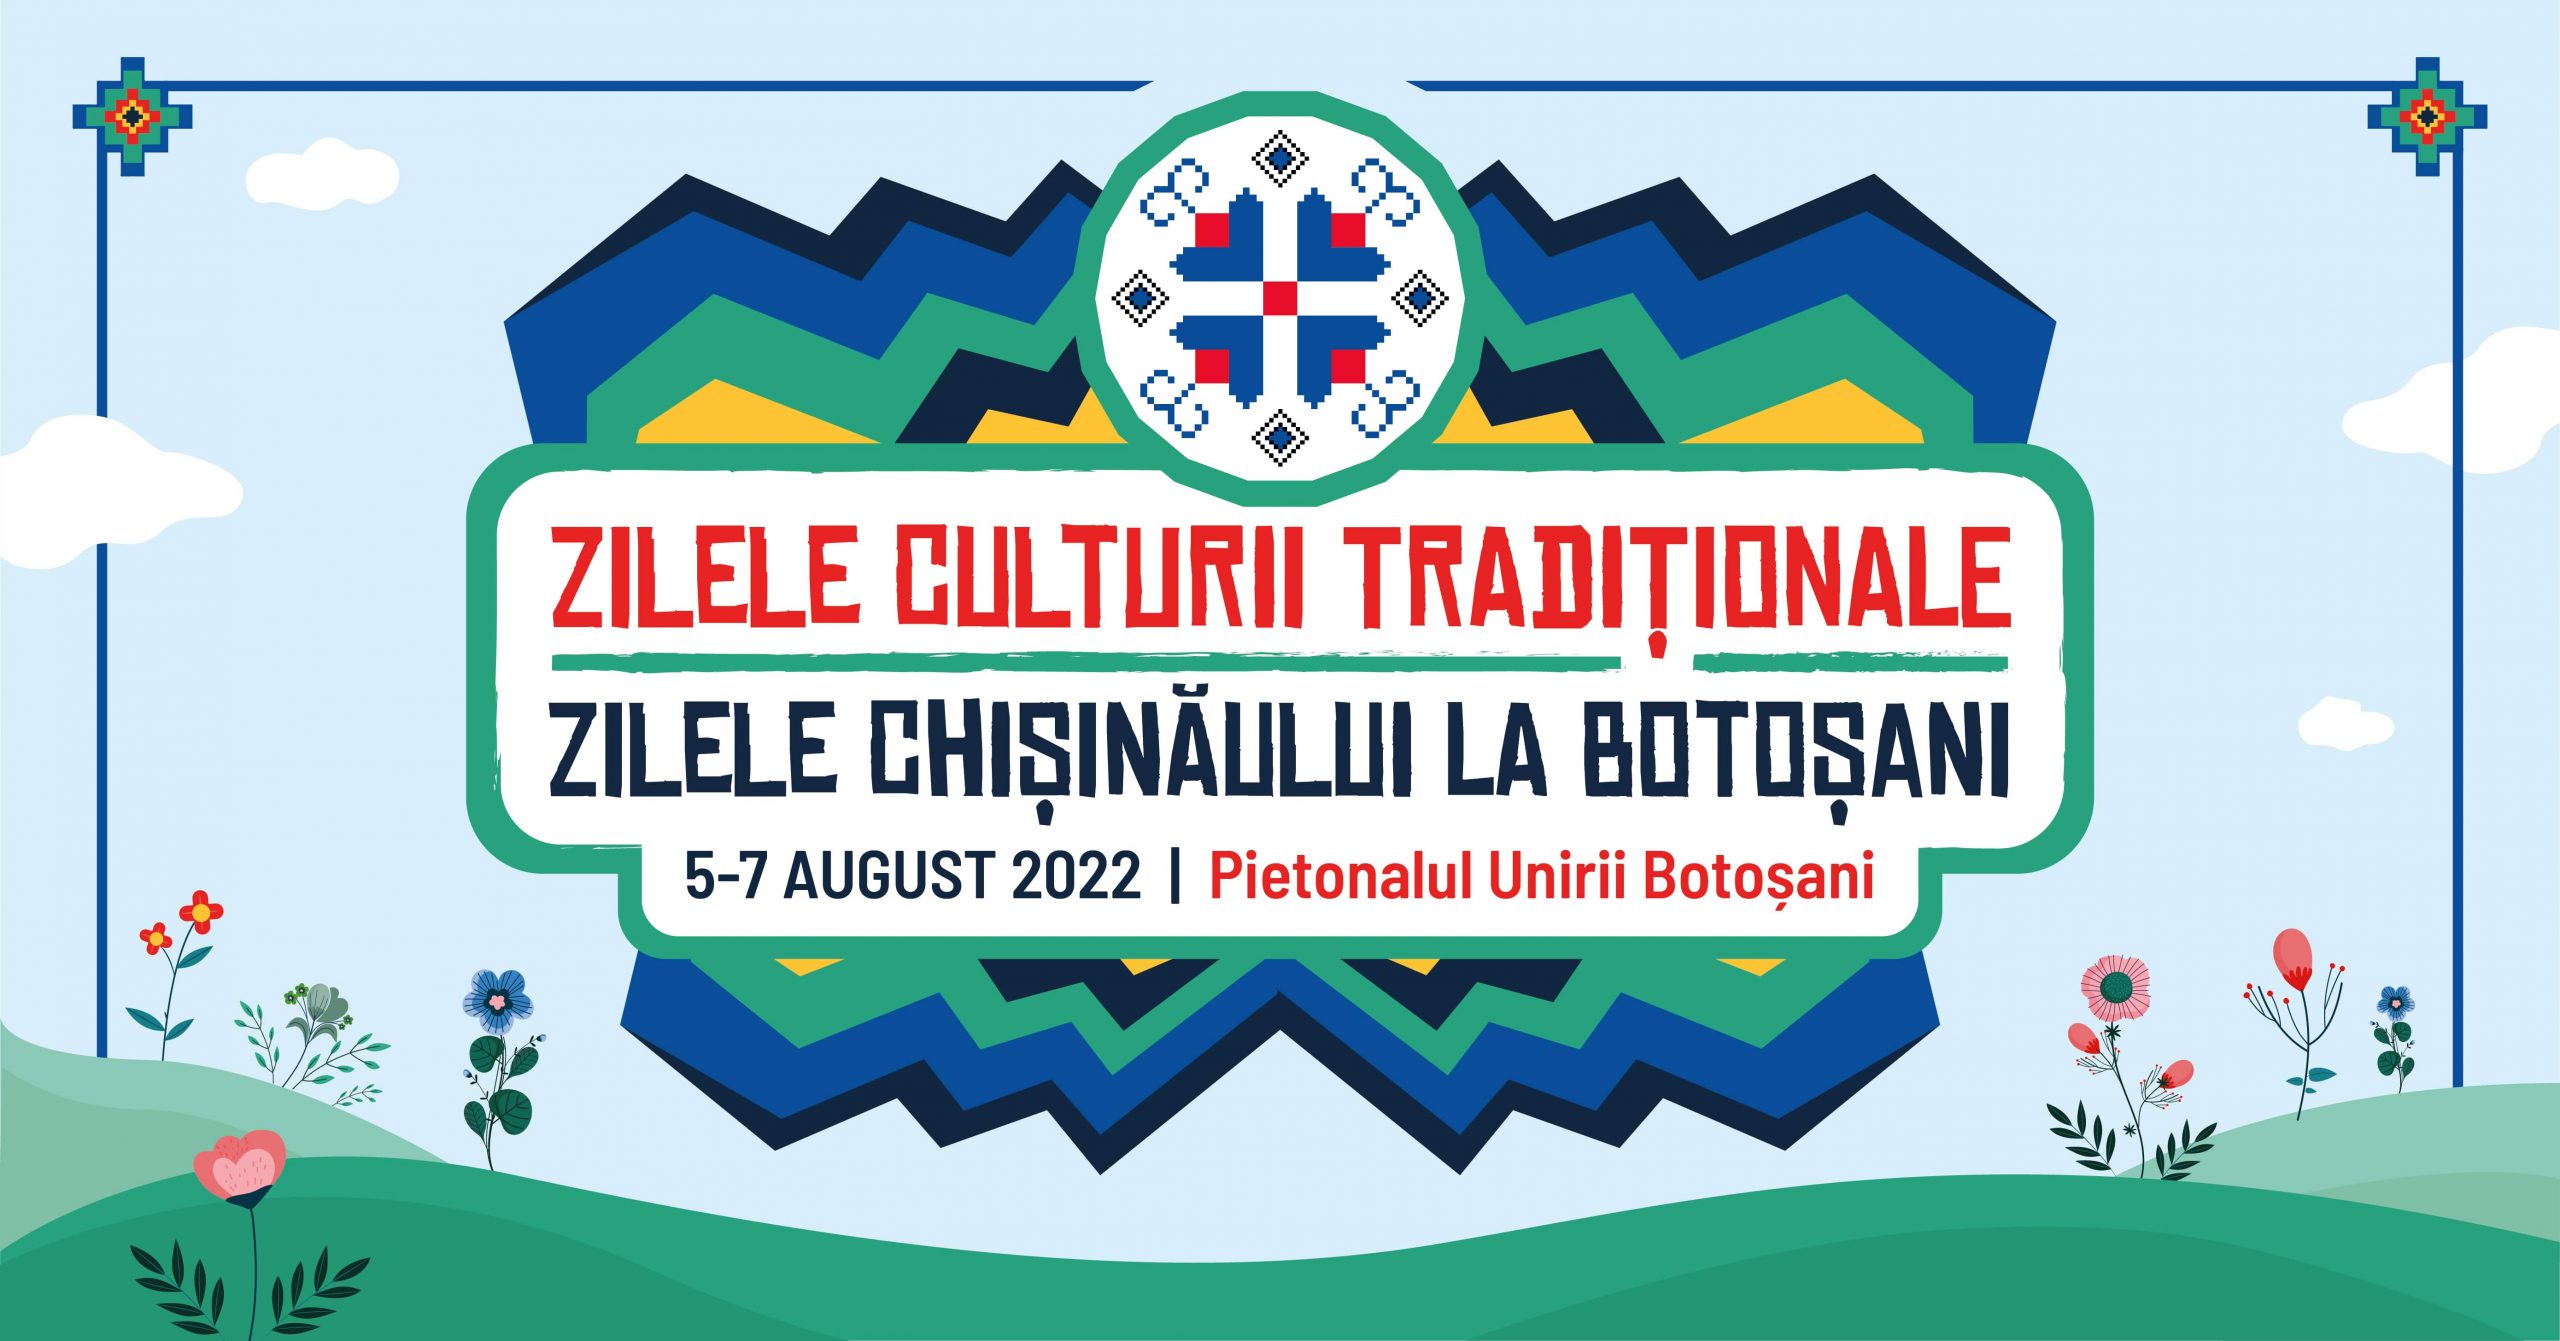 Zilele Culturii Tradiționale Zilele |Chișinăului la Botoșani, 5-7 august 2022